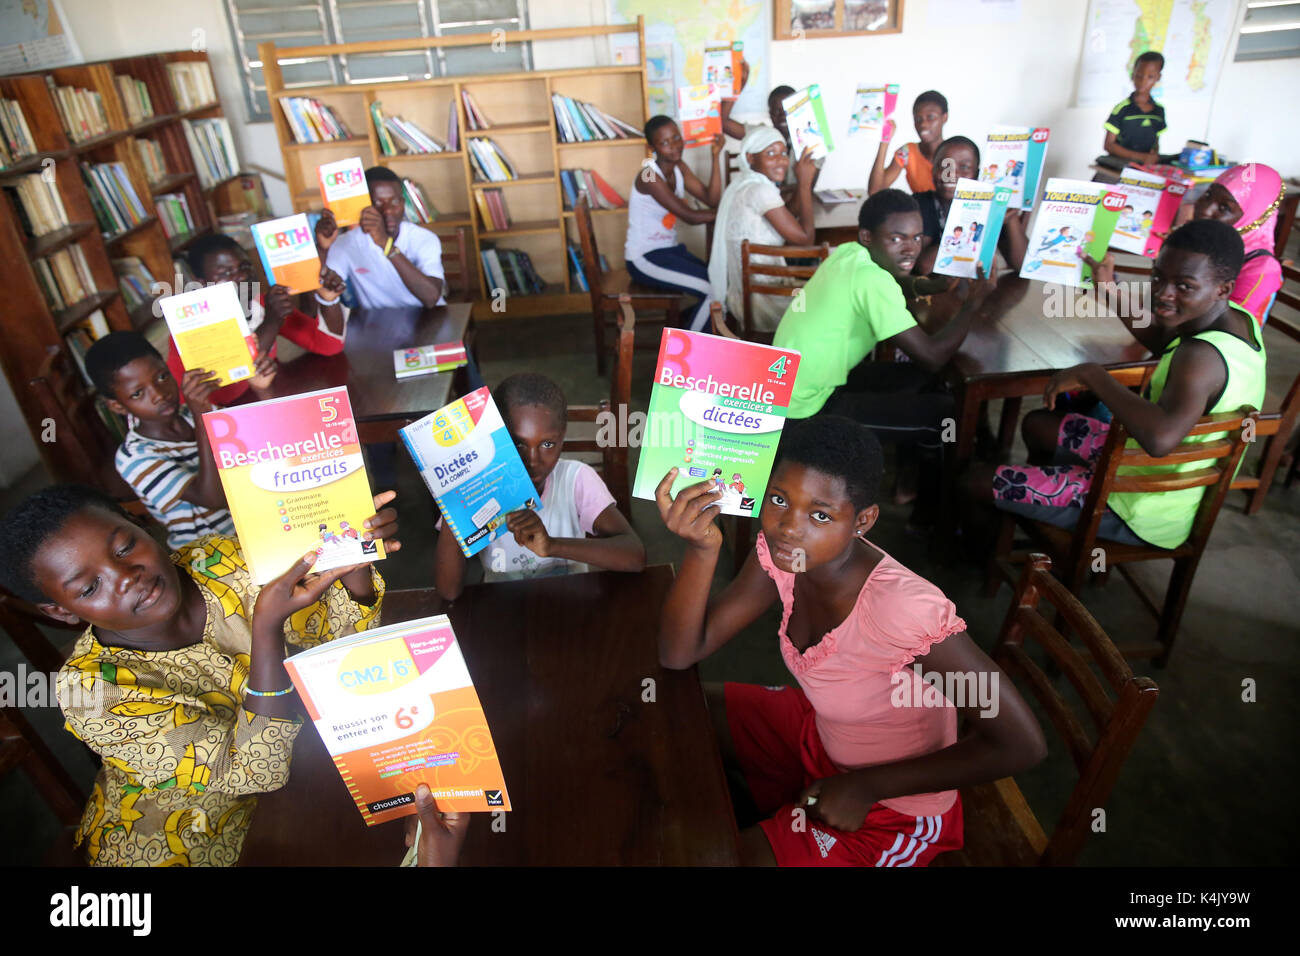 Bibliothek in einer afrikanischen Schule, wo Kinder durch die französische NRO, la Chaine de l'Espoir, Lome, Togo, Westafrika, Afrika gefördert werden Stockfoto